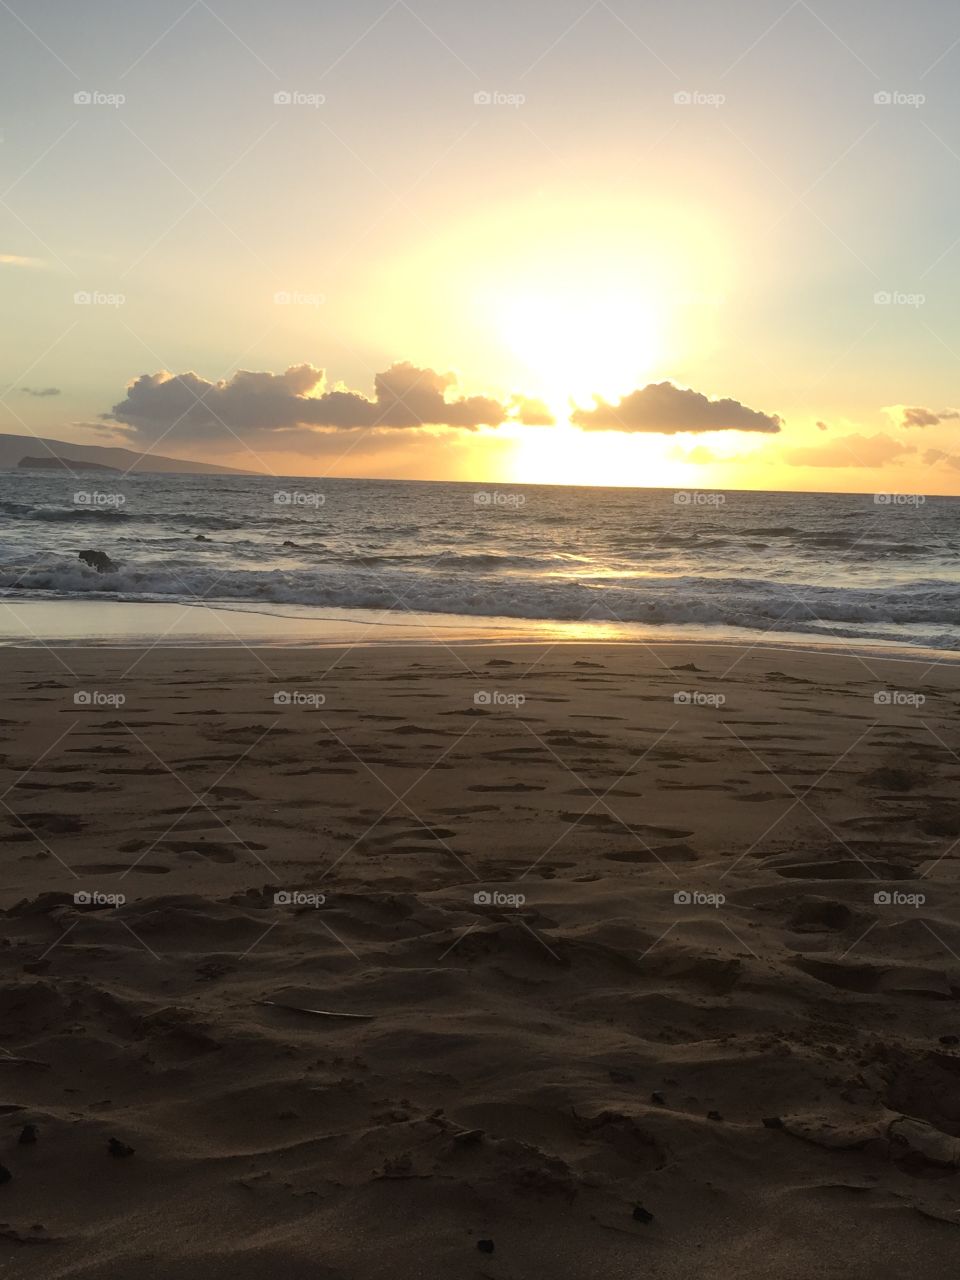 Sunset, Beach, Water, Sun, Ocean